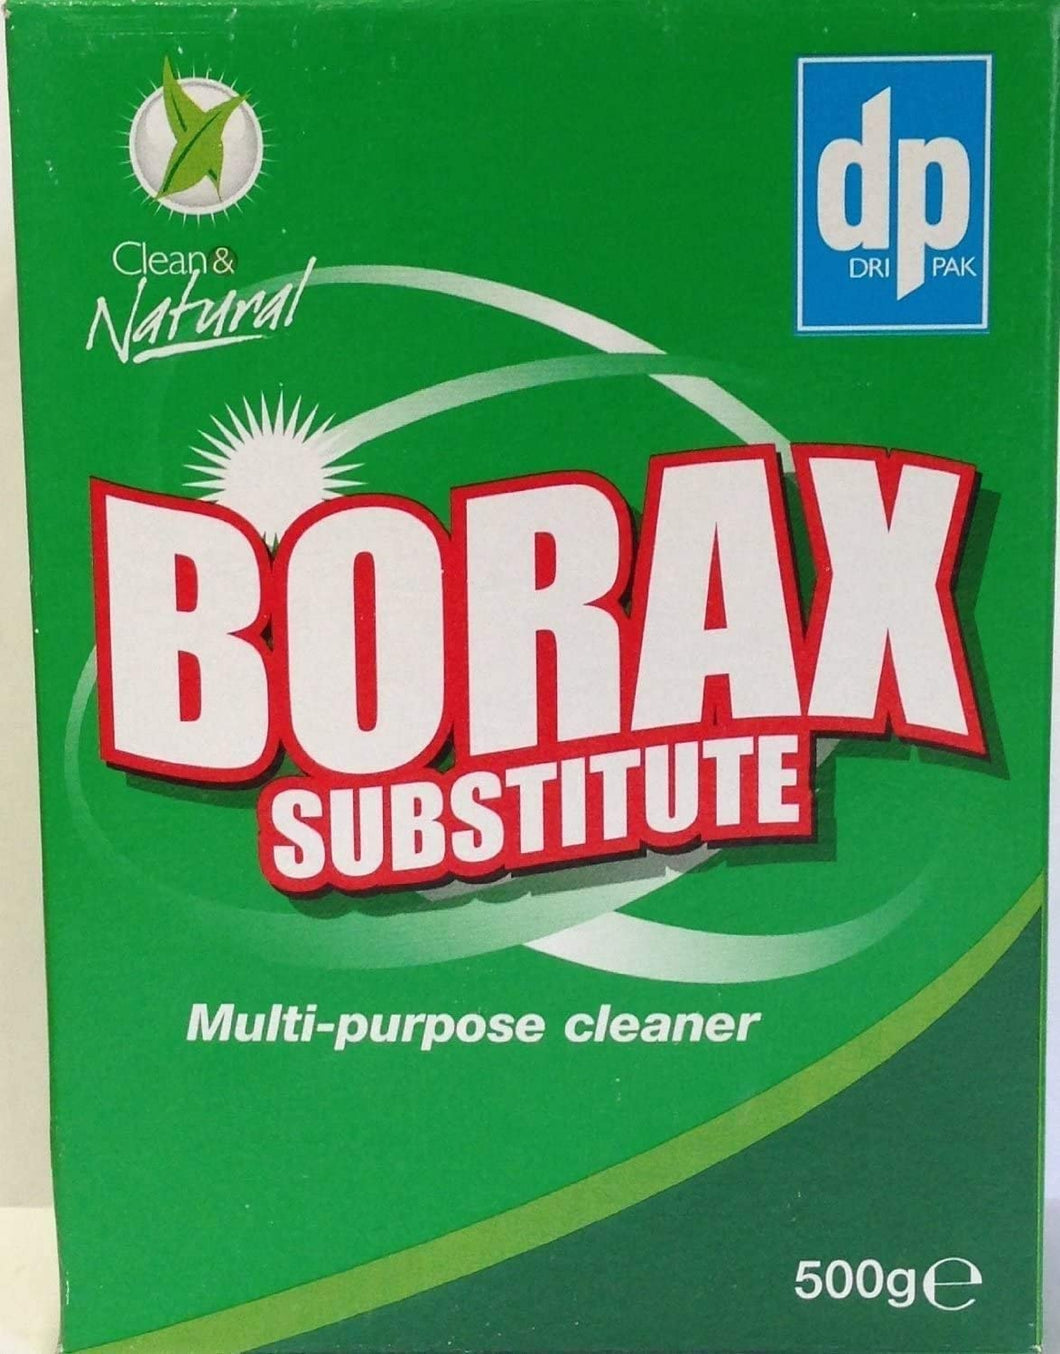 Dri Pak Borax Substitute 500g